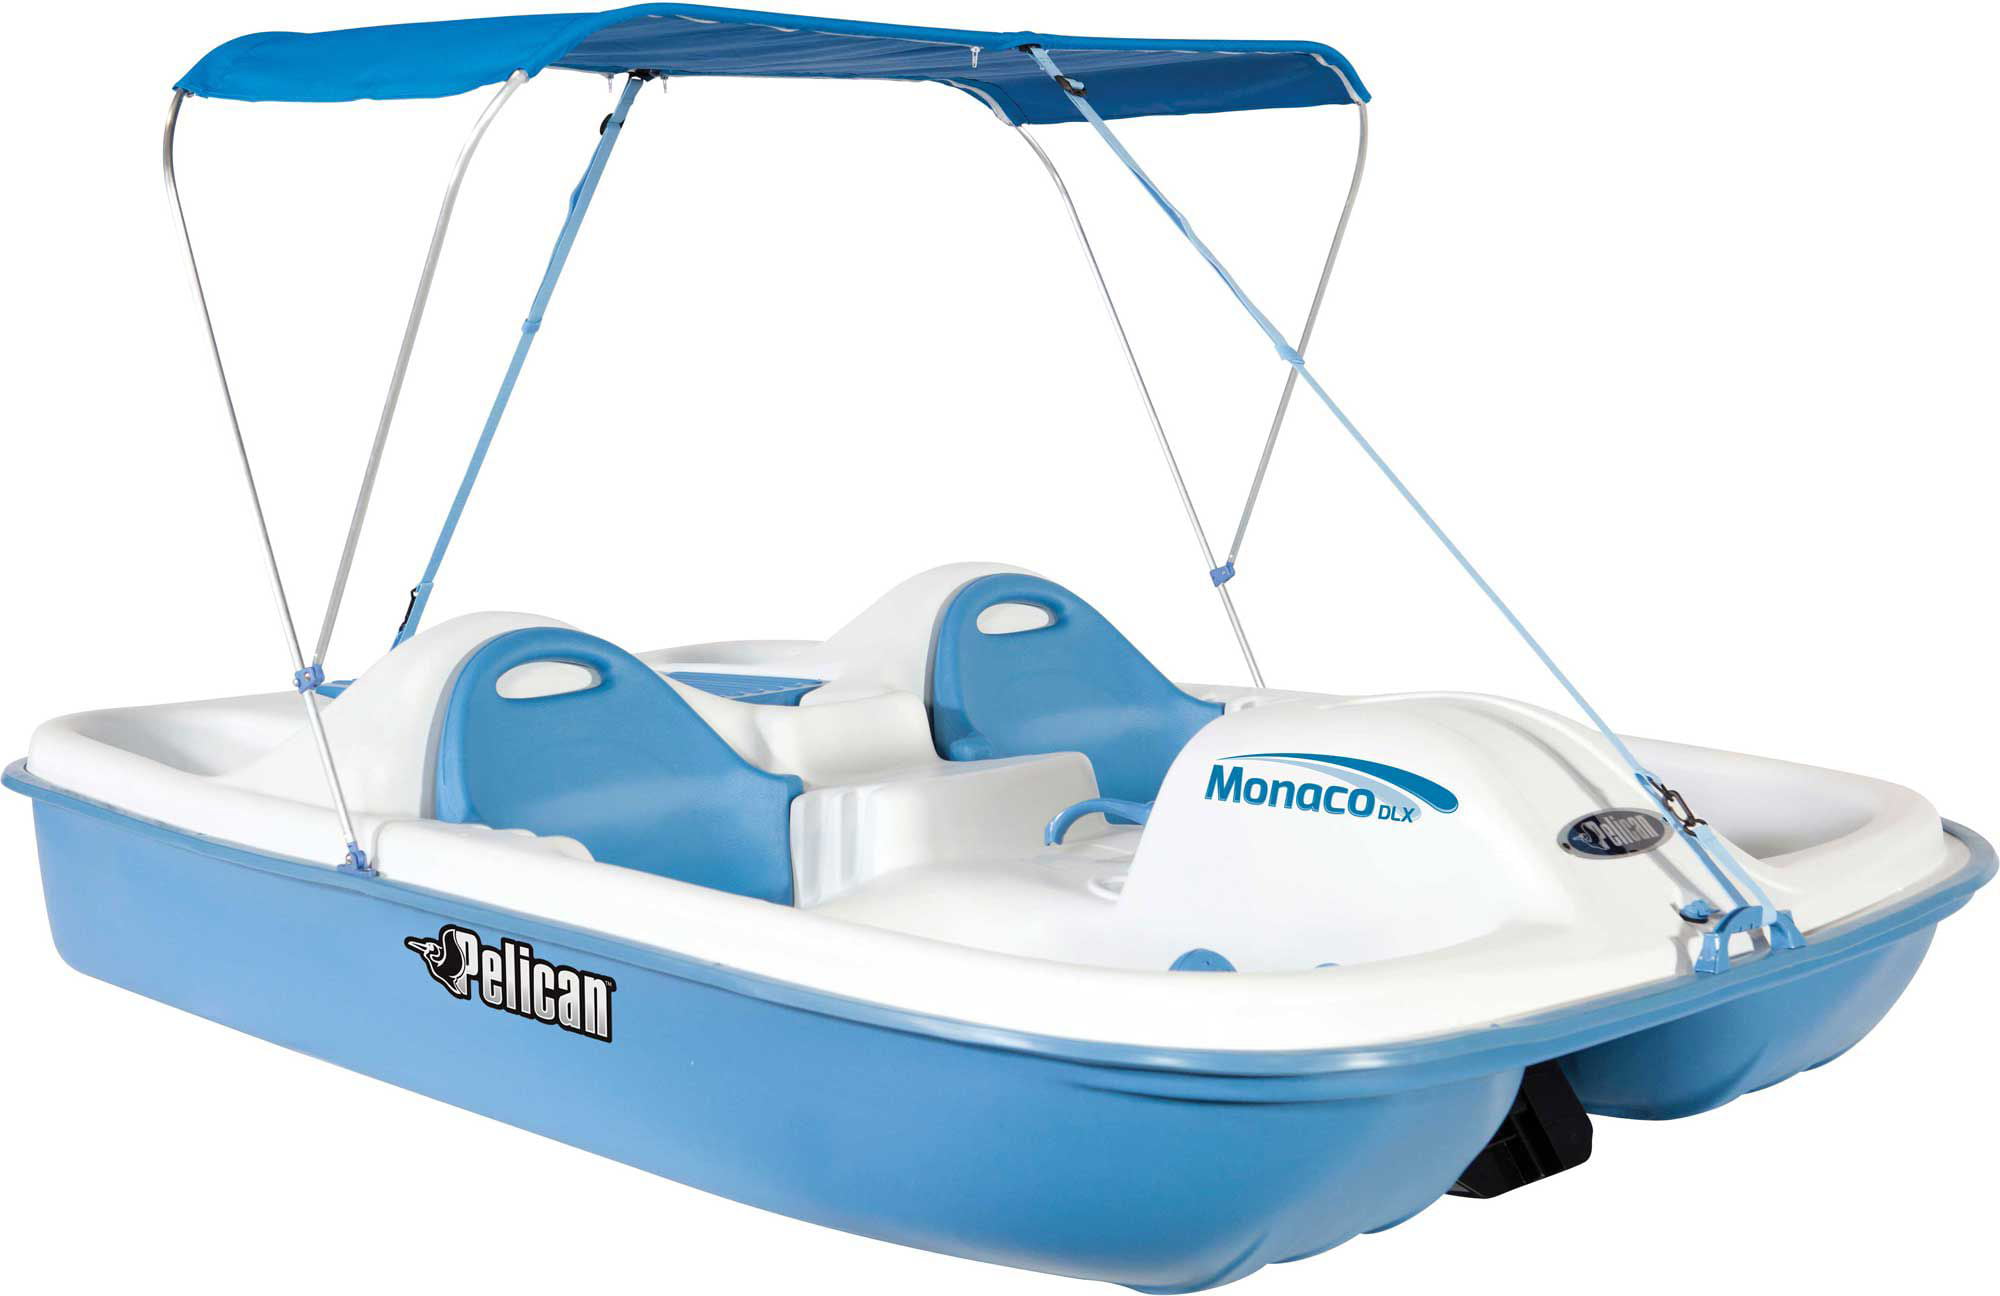 Pelican Monaco DLX Pedal Boat